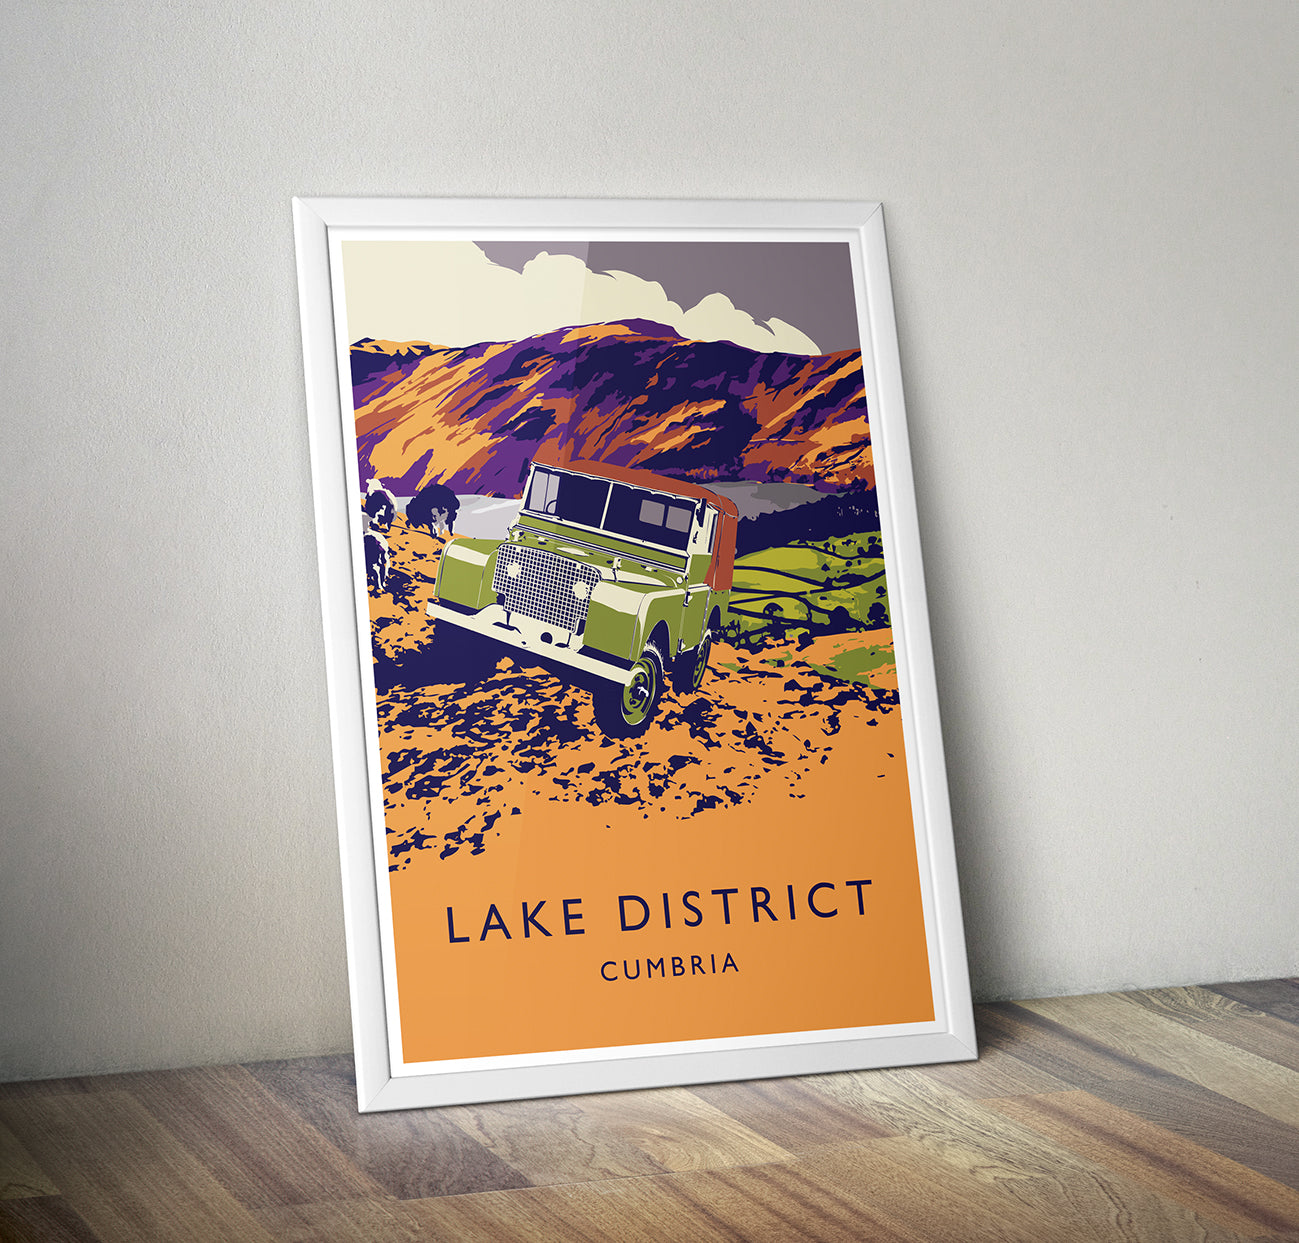 'Lake District' prints